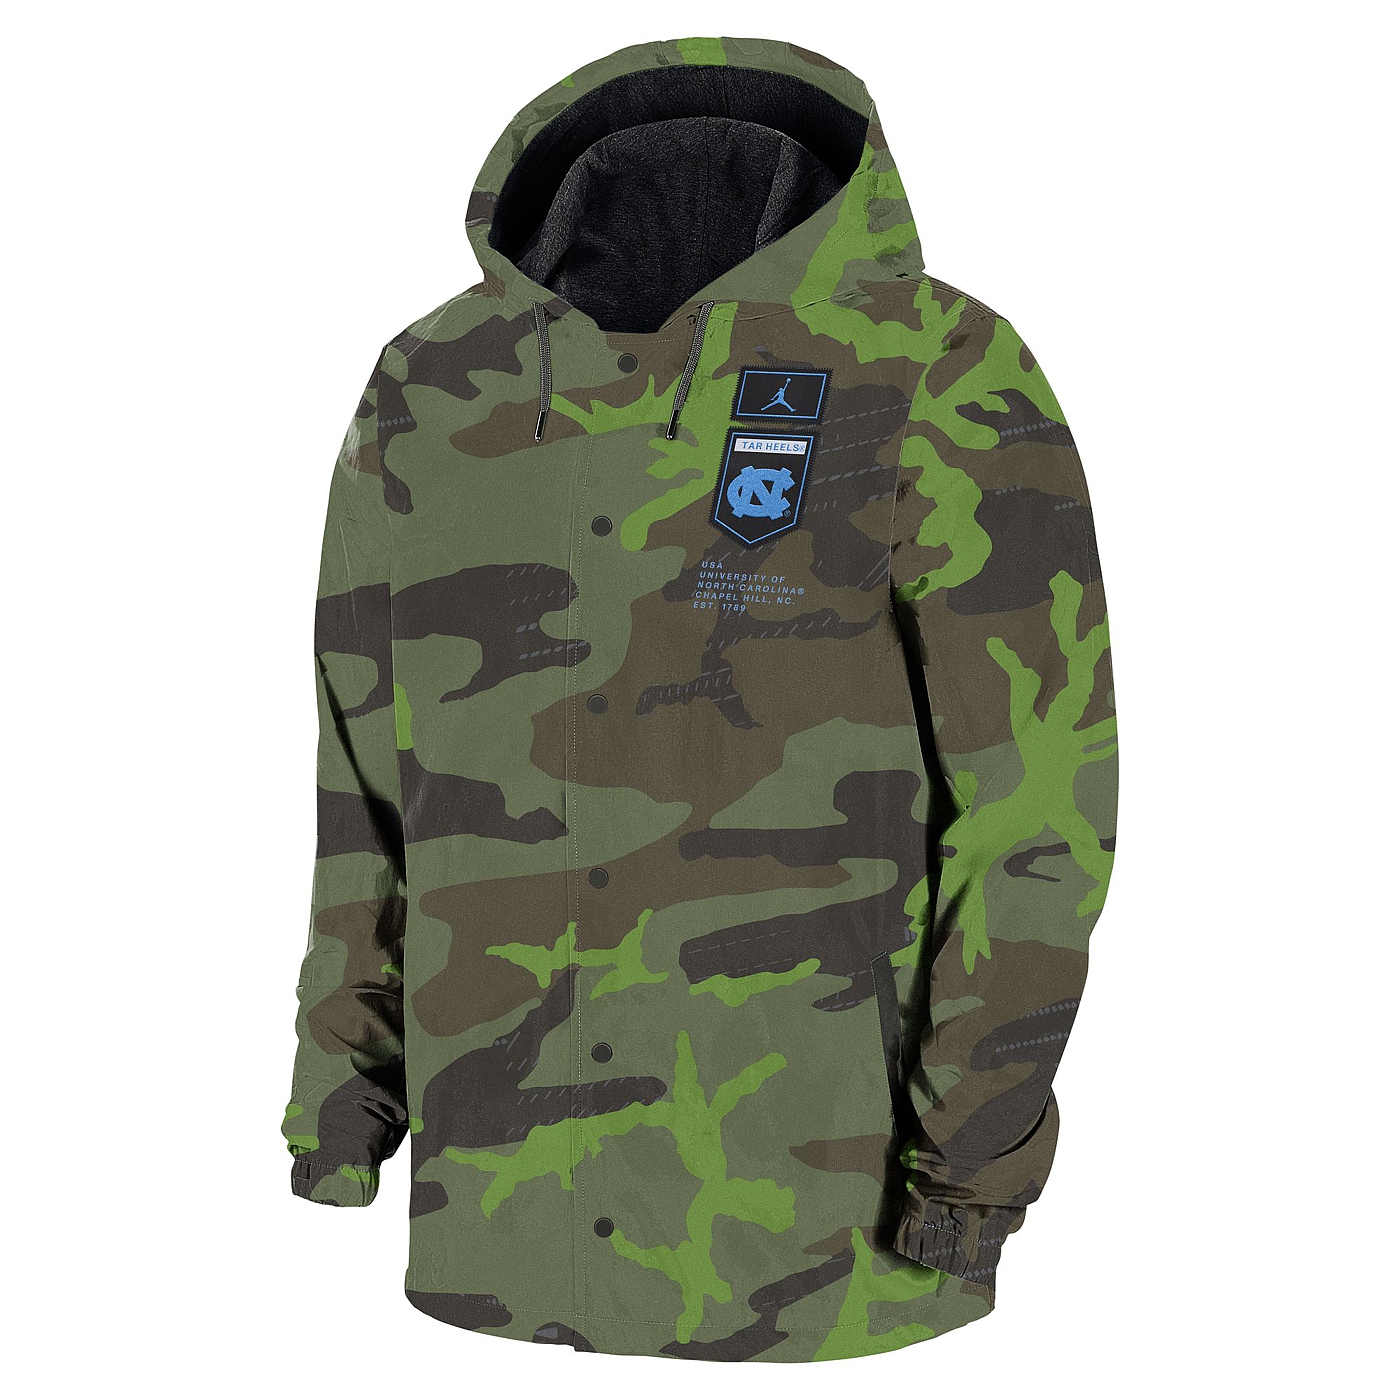 Nike Military Jacket (Camo)